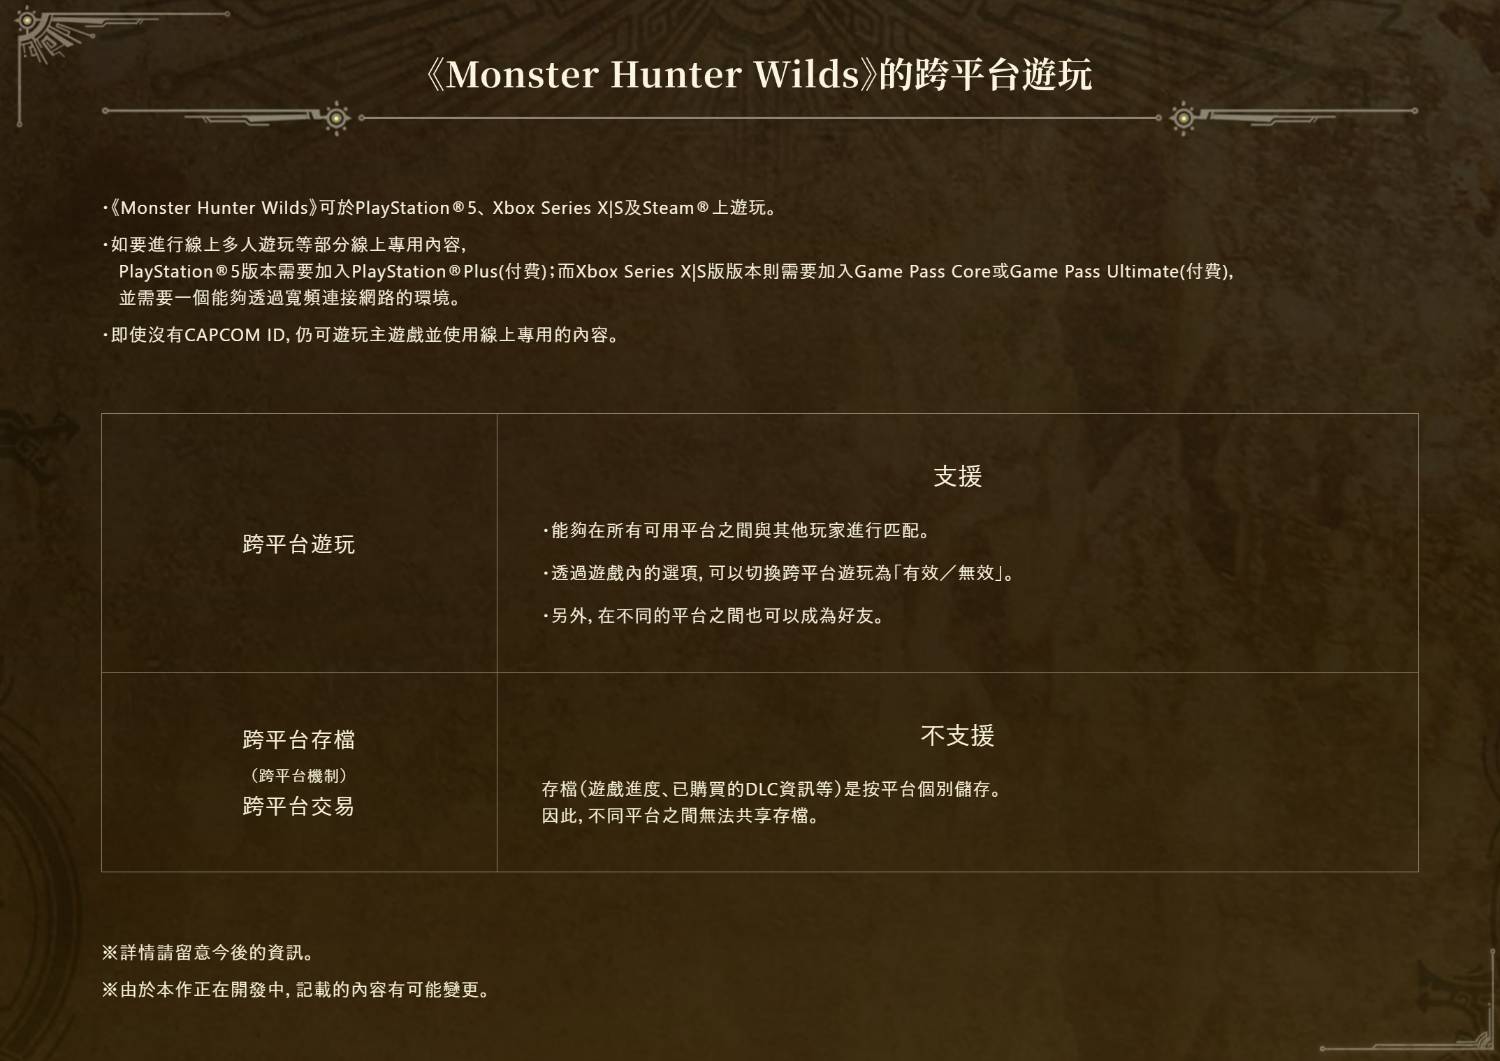 圖 Monster Hunter Wilds 新pv